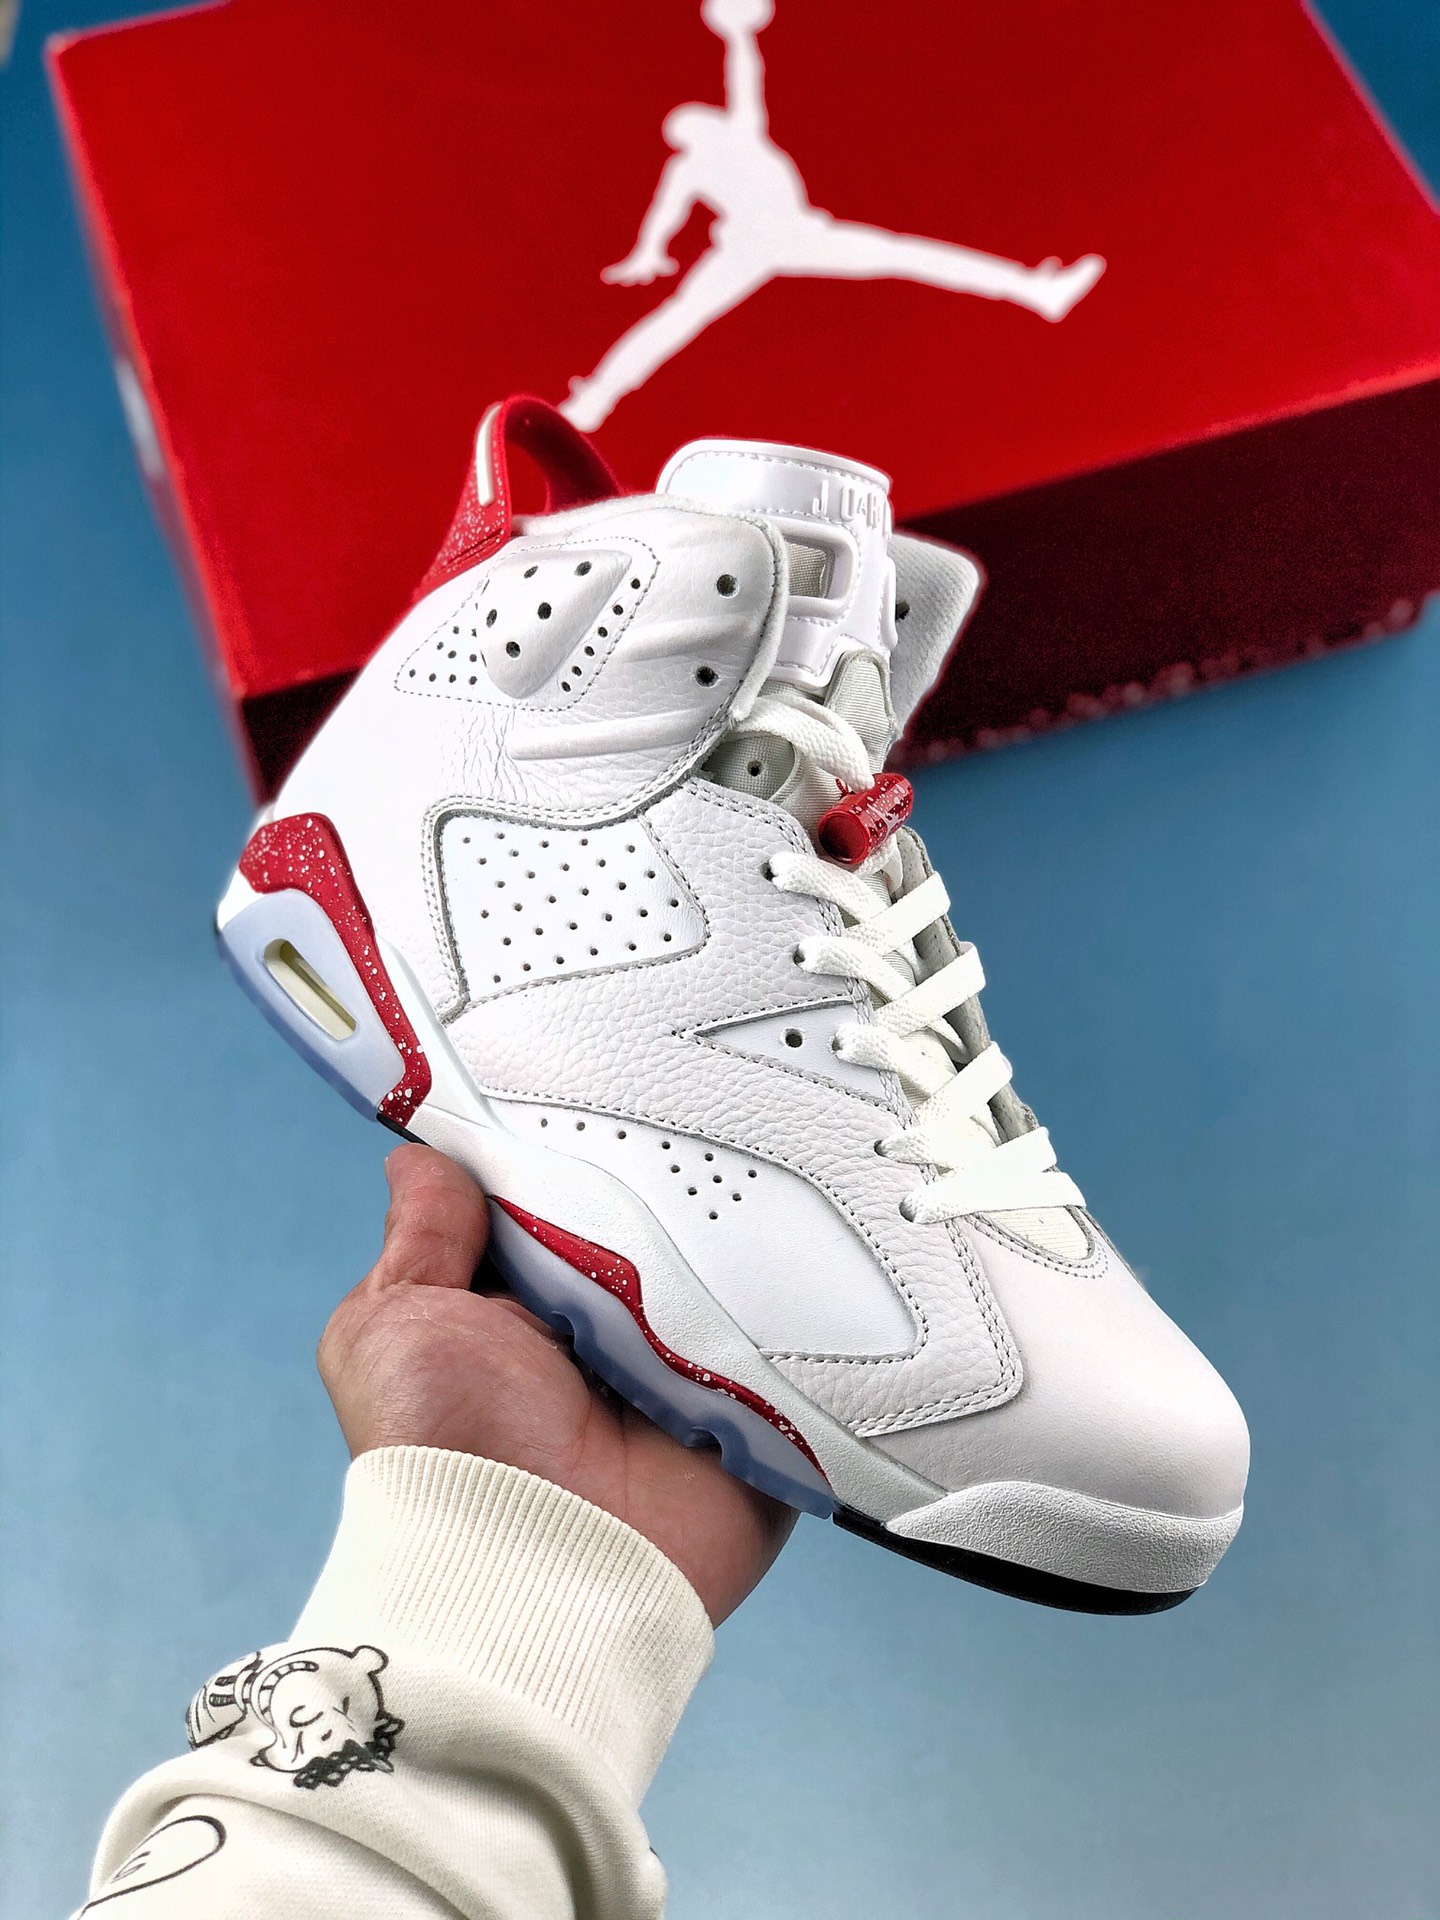 本地自取 核心放店
Nike Air Jordan 6 Retro